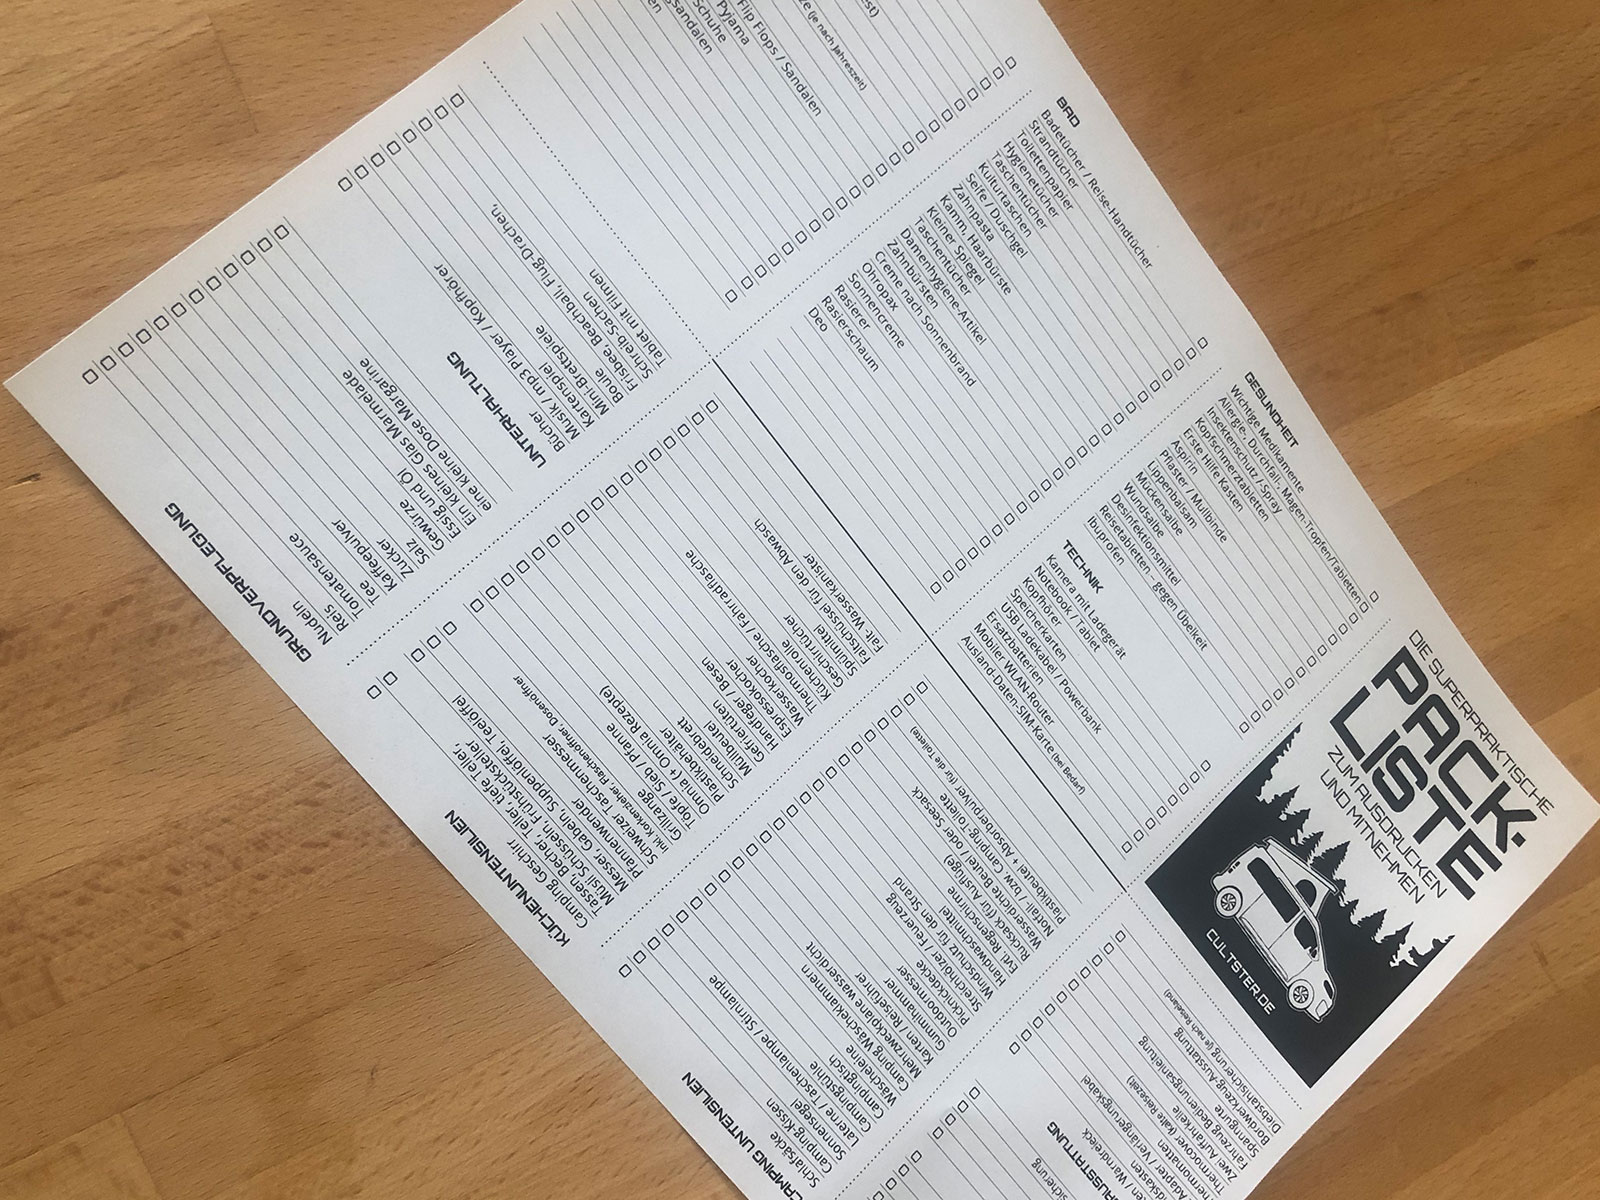 Packliste auf ein DIN A4 Bogen ausdrucken